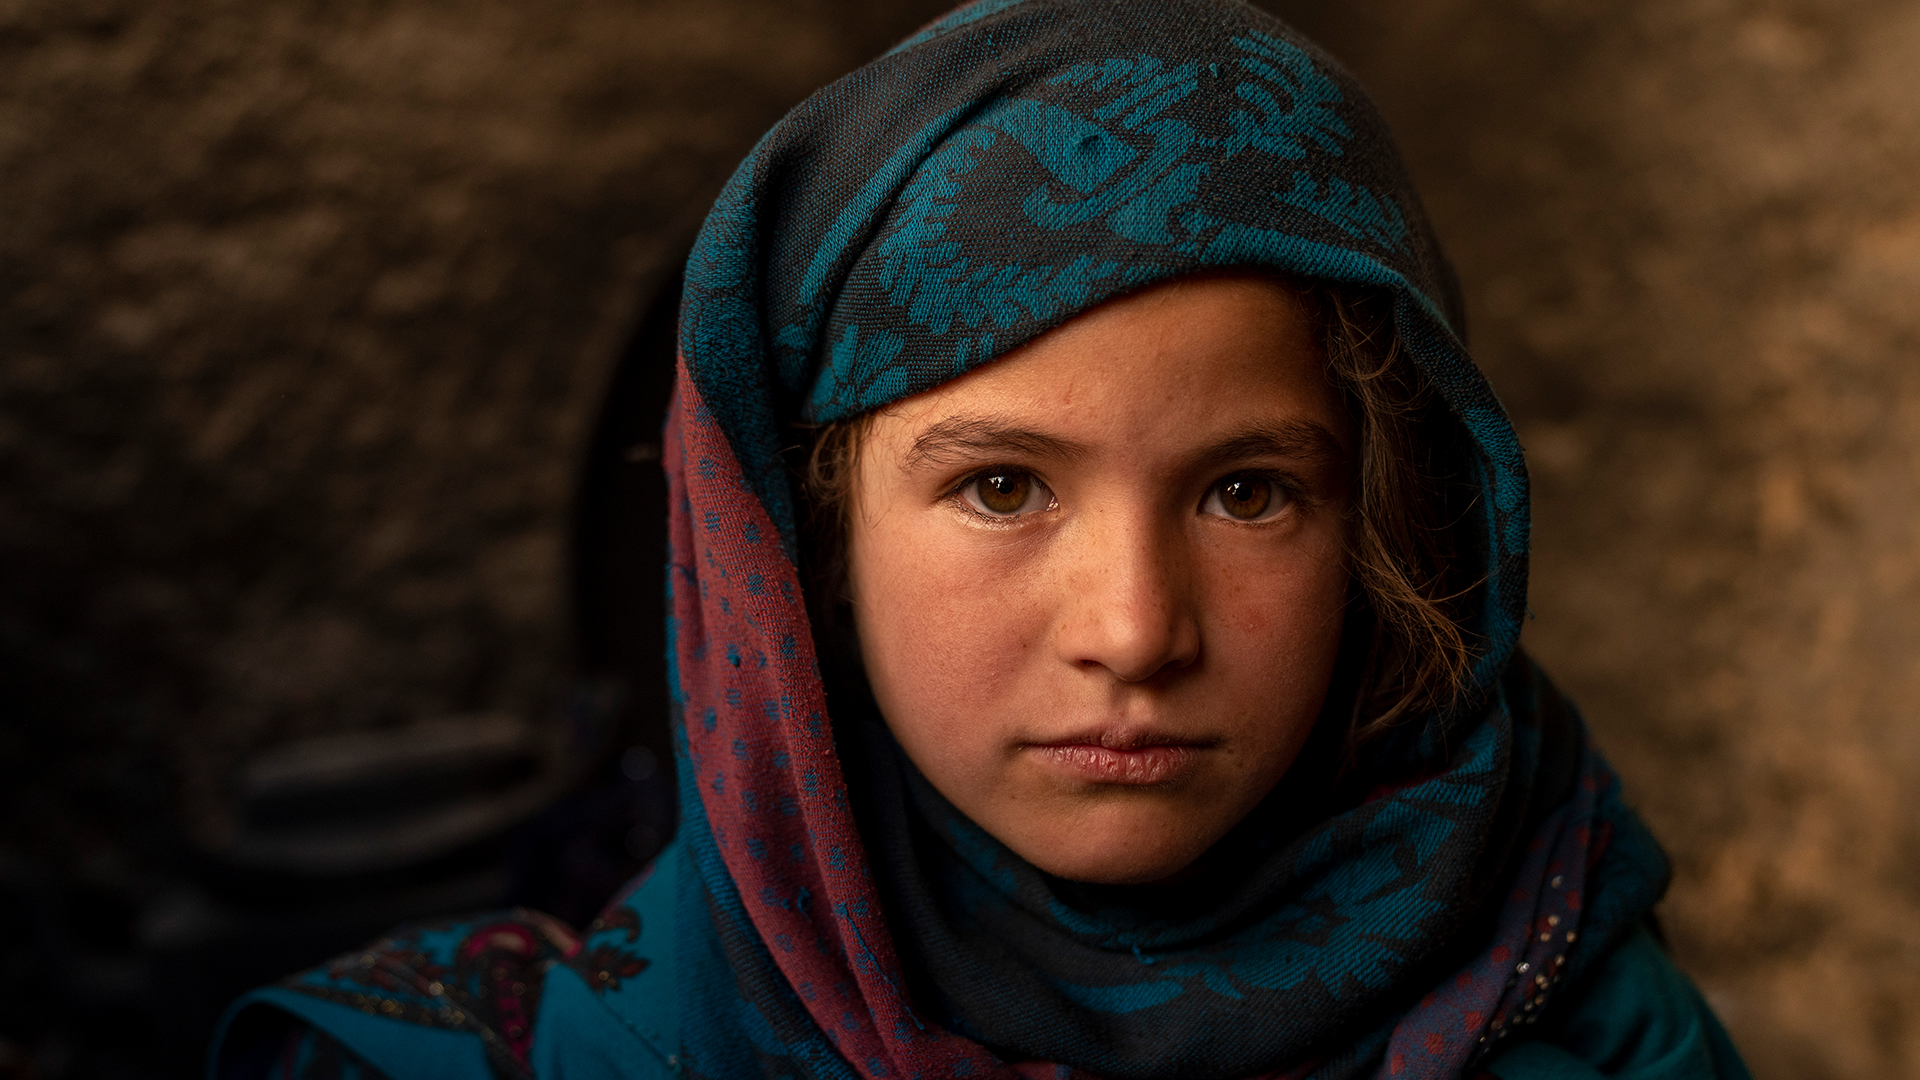 Mädchen aus Afghanistan Key-Visual_16_9.jpg